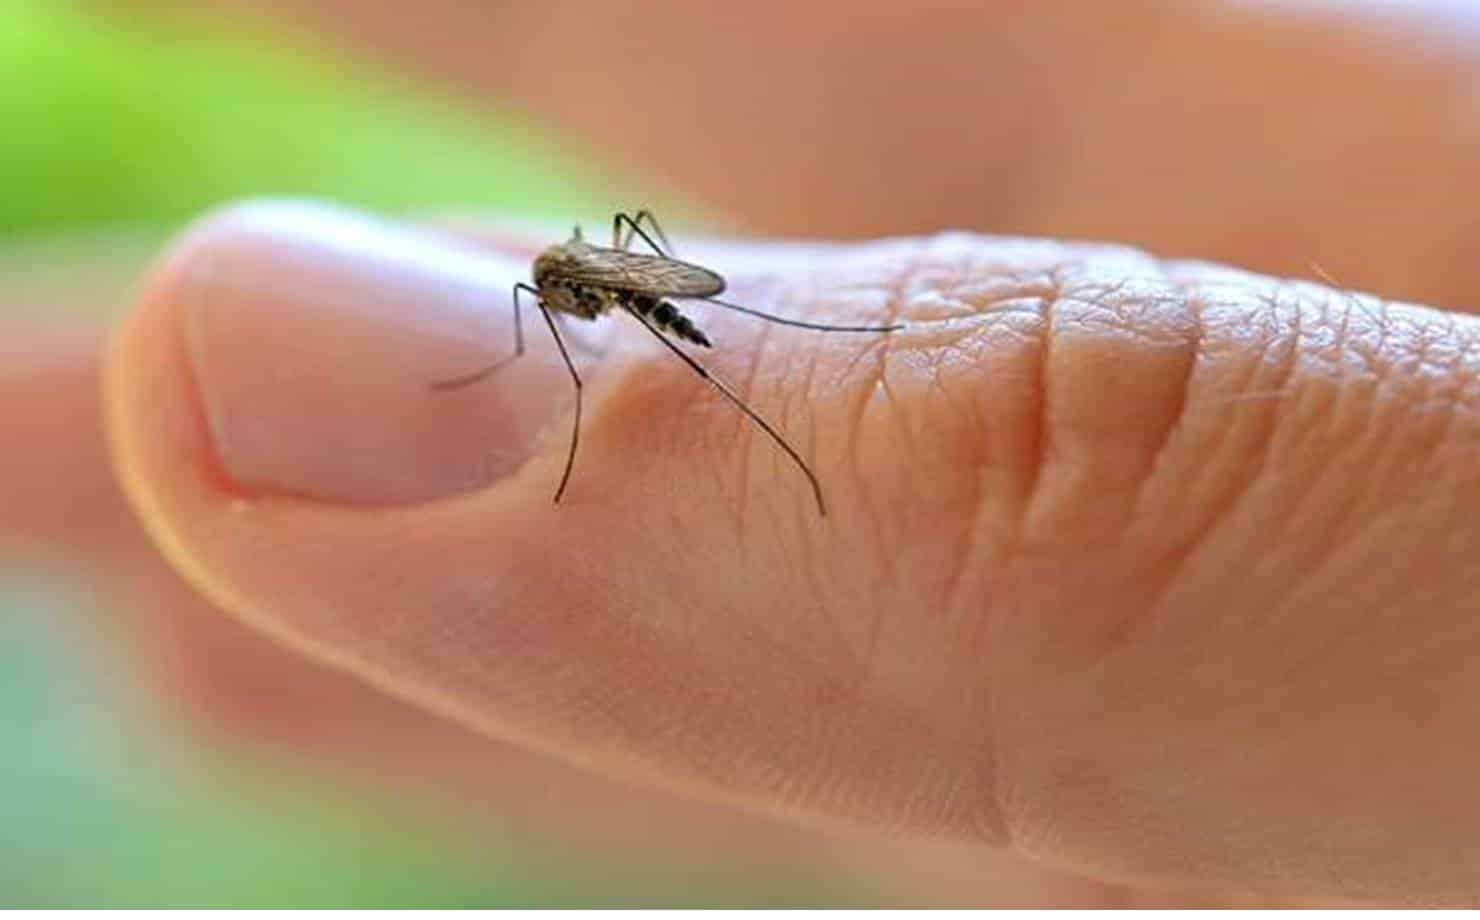 Mosquito no Dedo